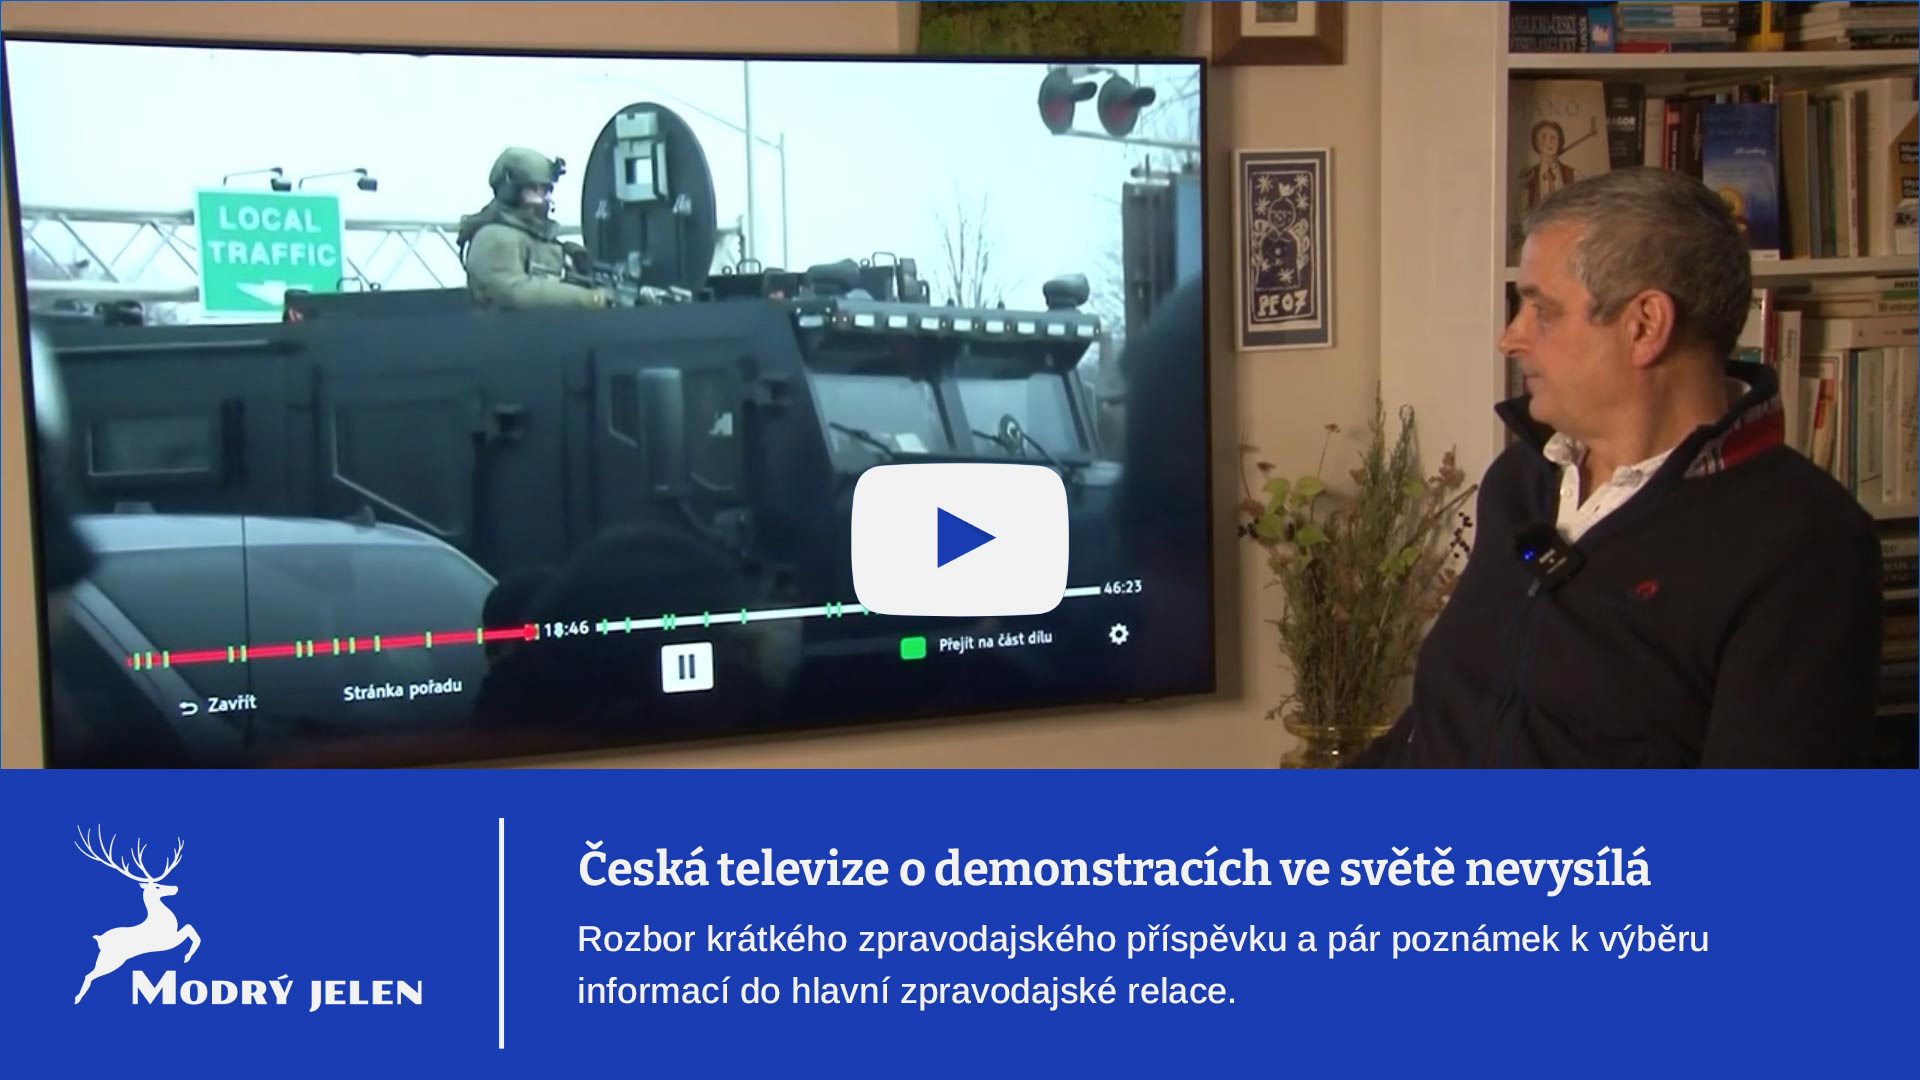 (Pro)buzení České televize: O demonstracích nevysílá